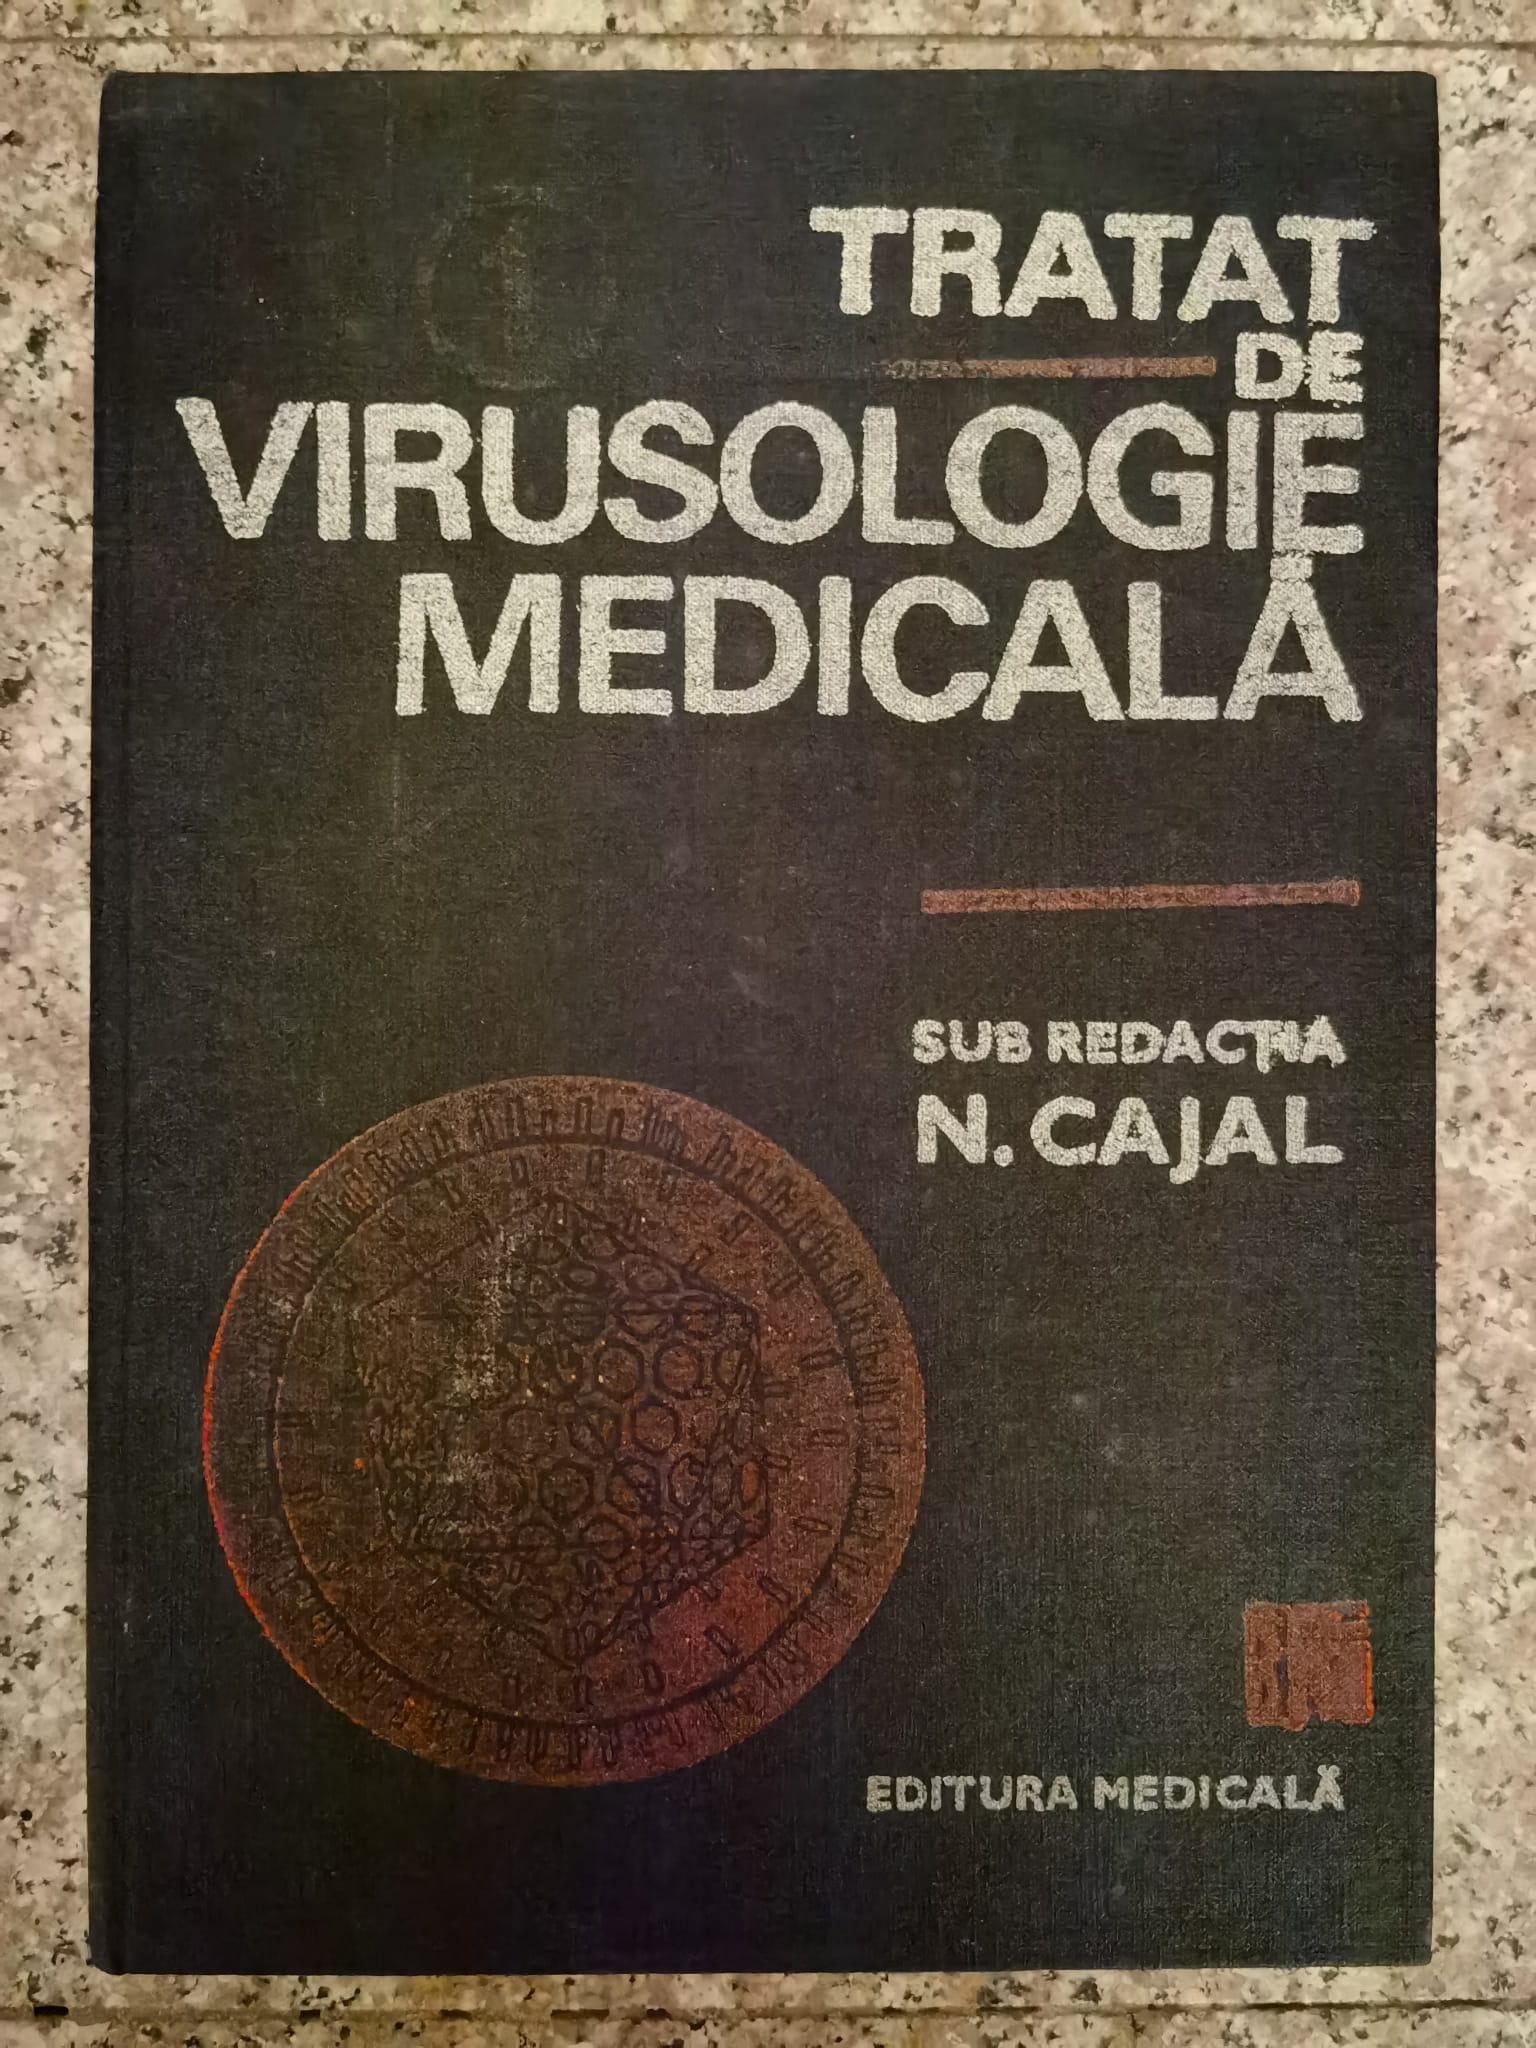 tratat de virusologie medicala vol.1                                                                 sub redactia n. cajal                                                                               